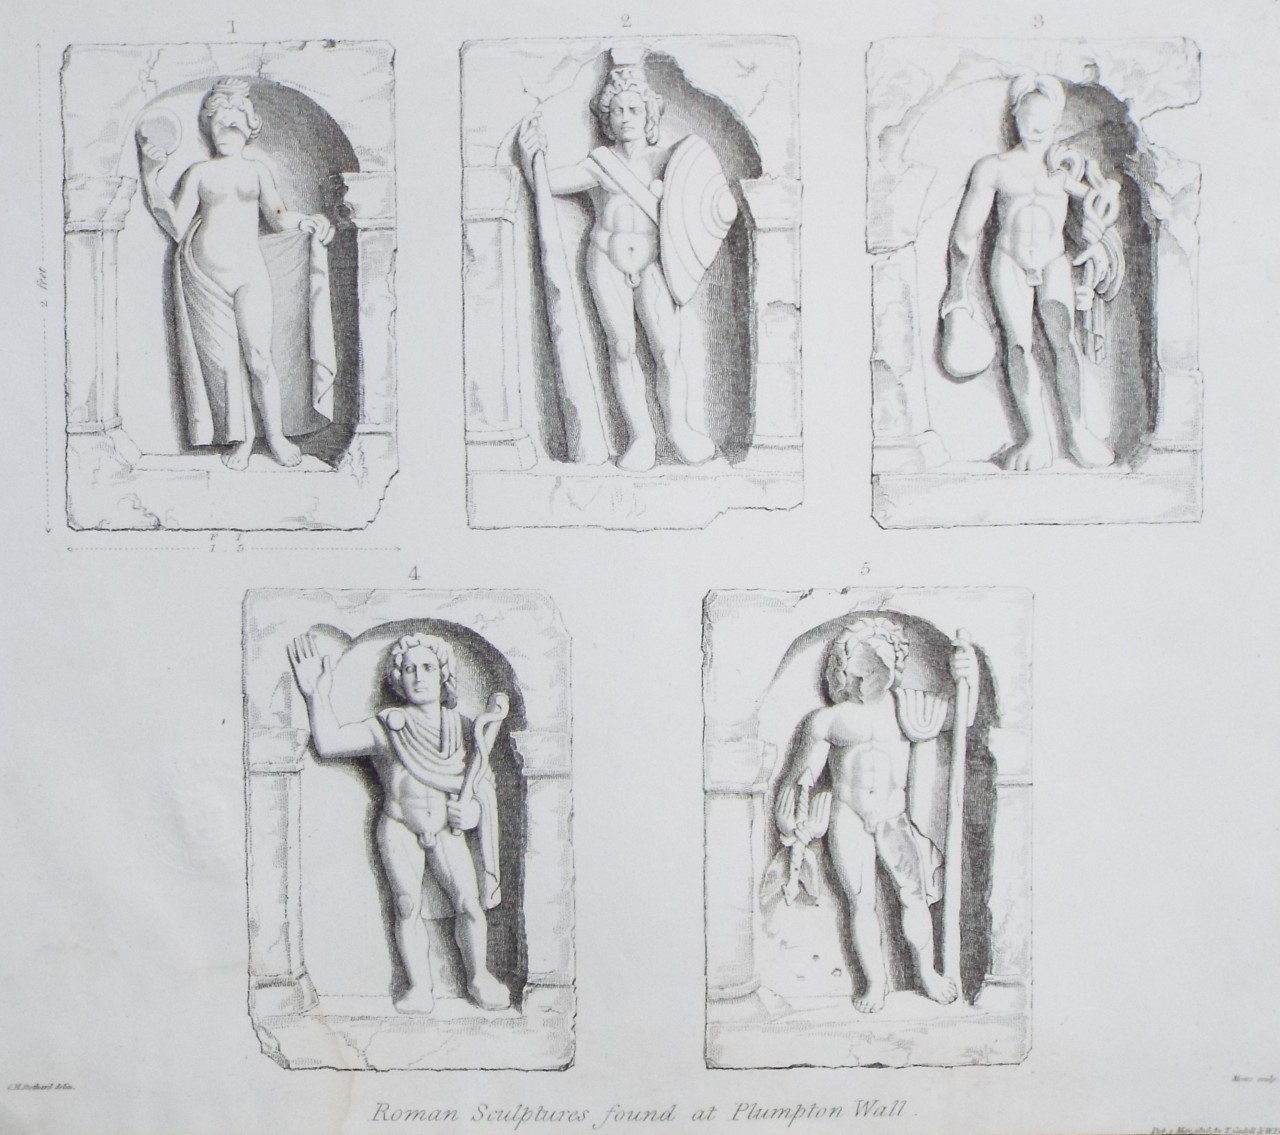 Print - Roman Sculptures found at Plumpton Wall. - 